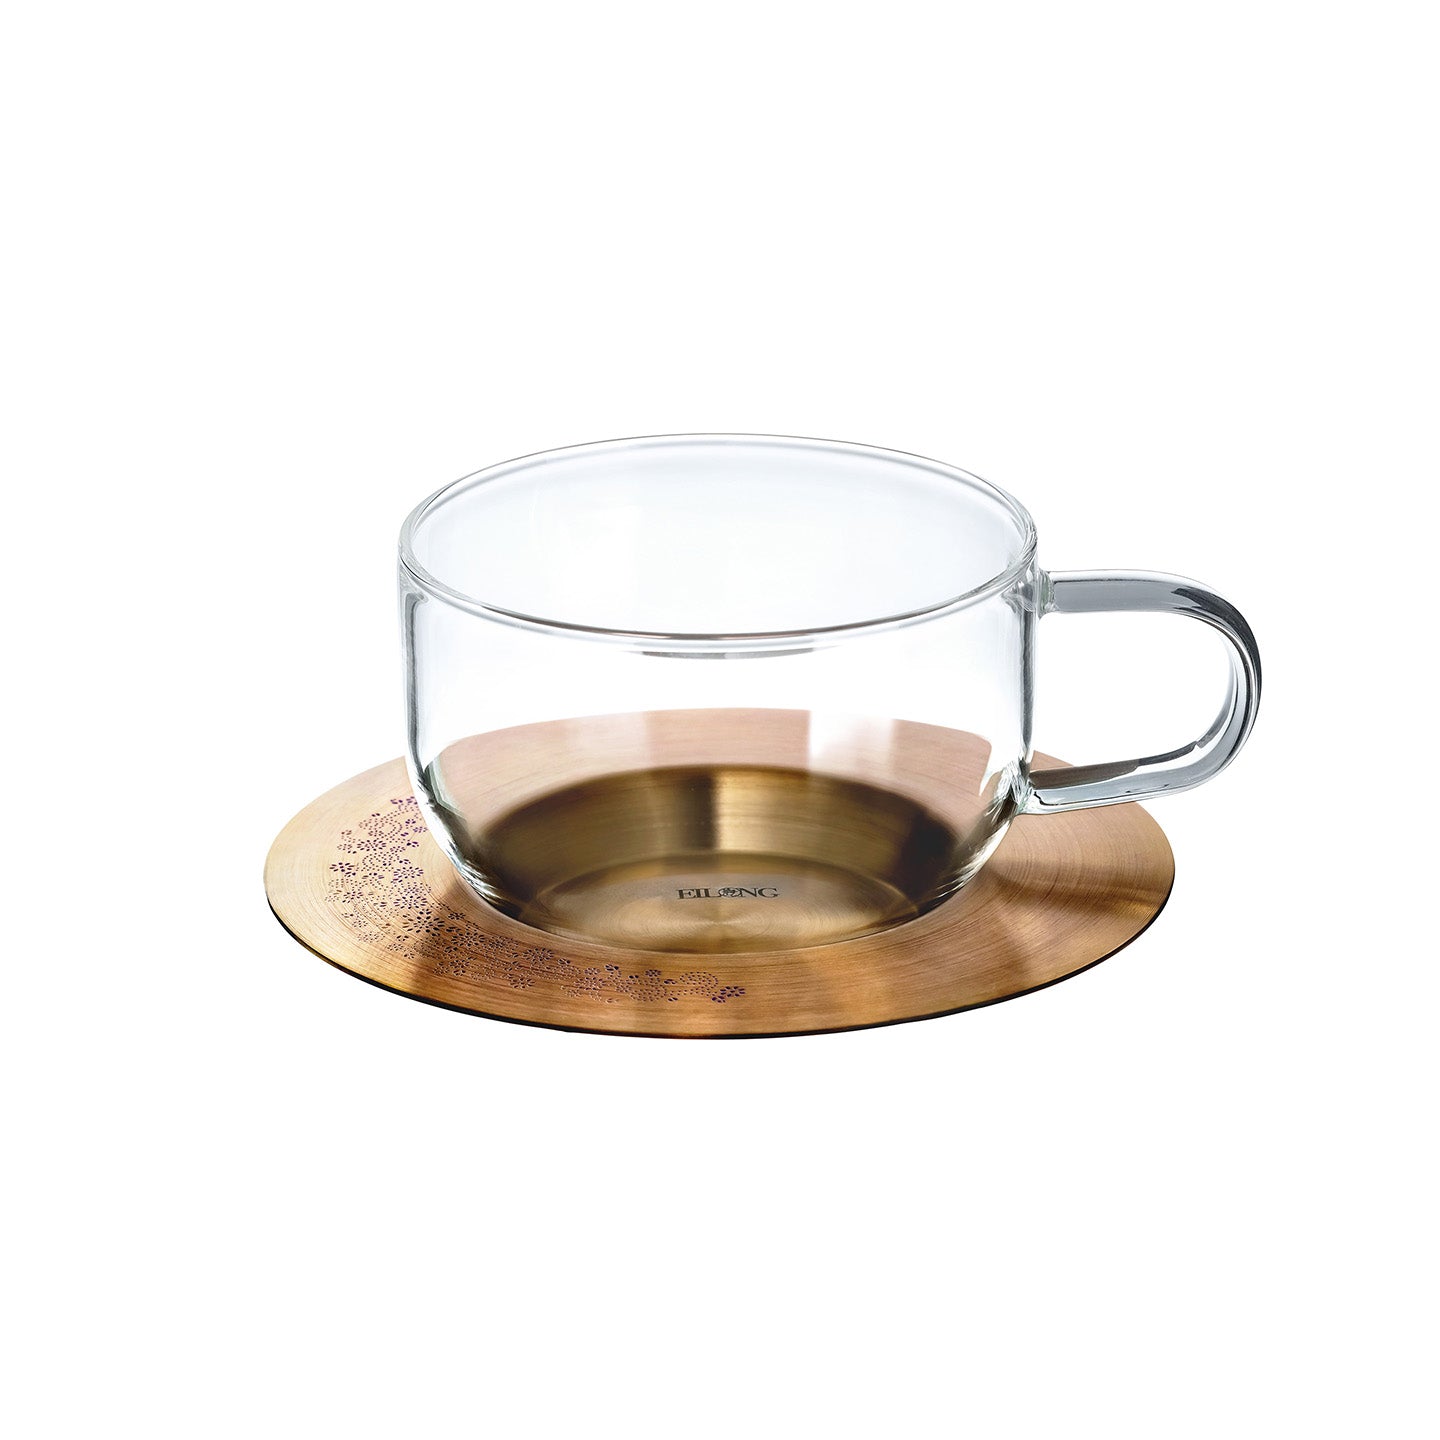 Aurora Glass Cup & Saucer (240ml)